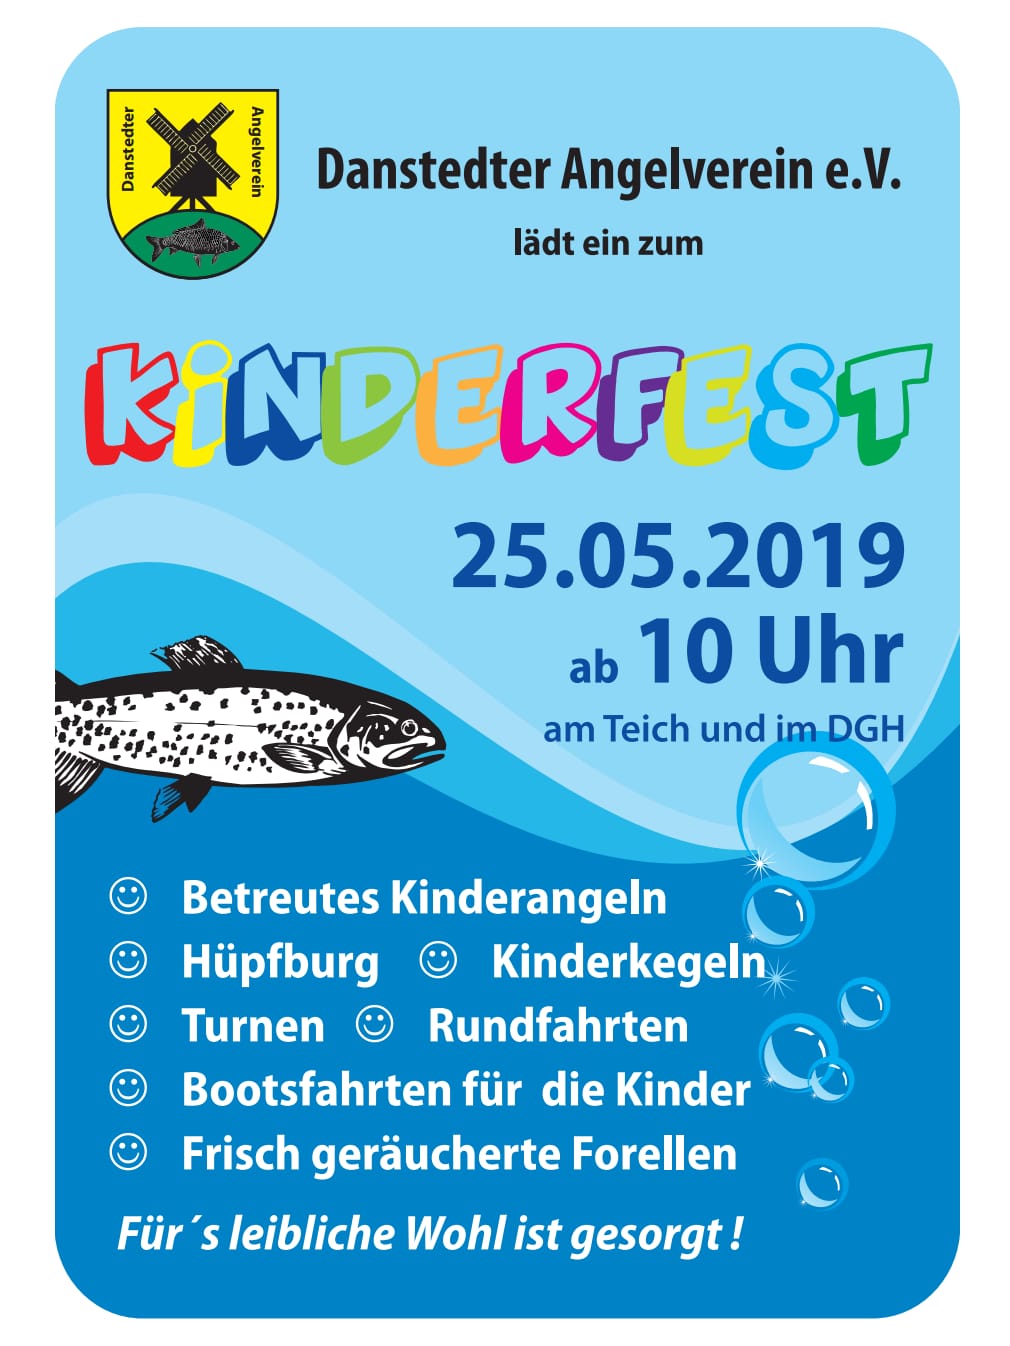 Kinderfest Danstedt 2019